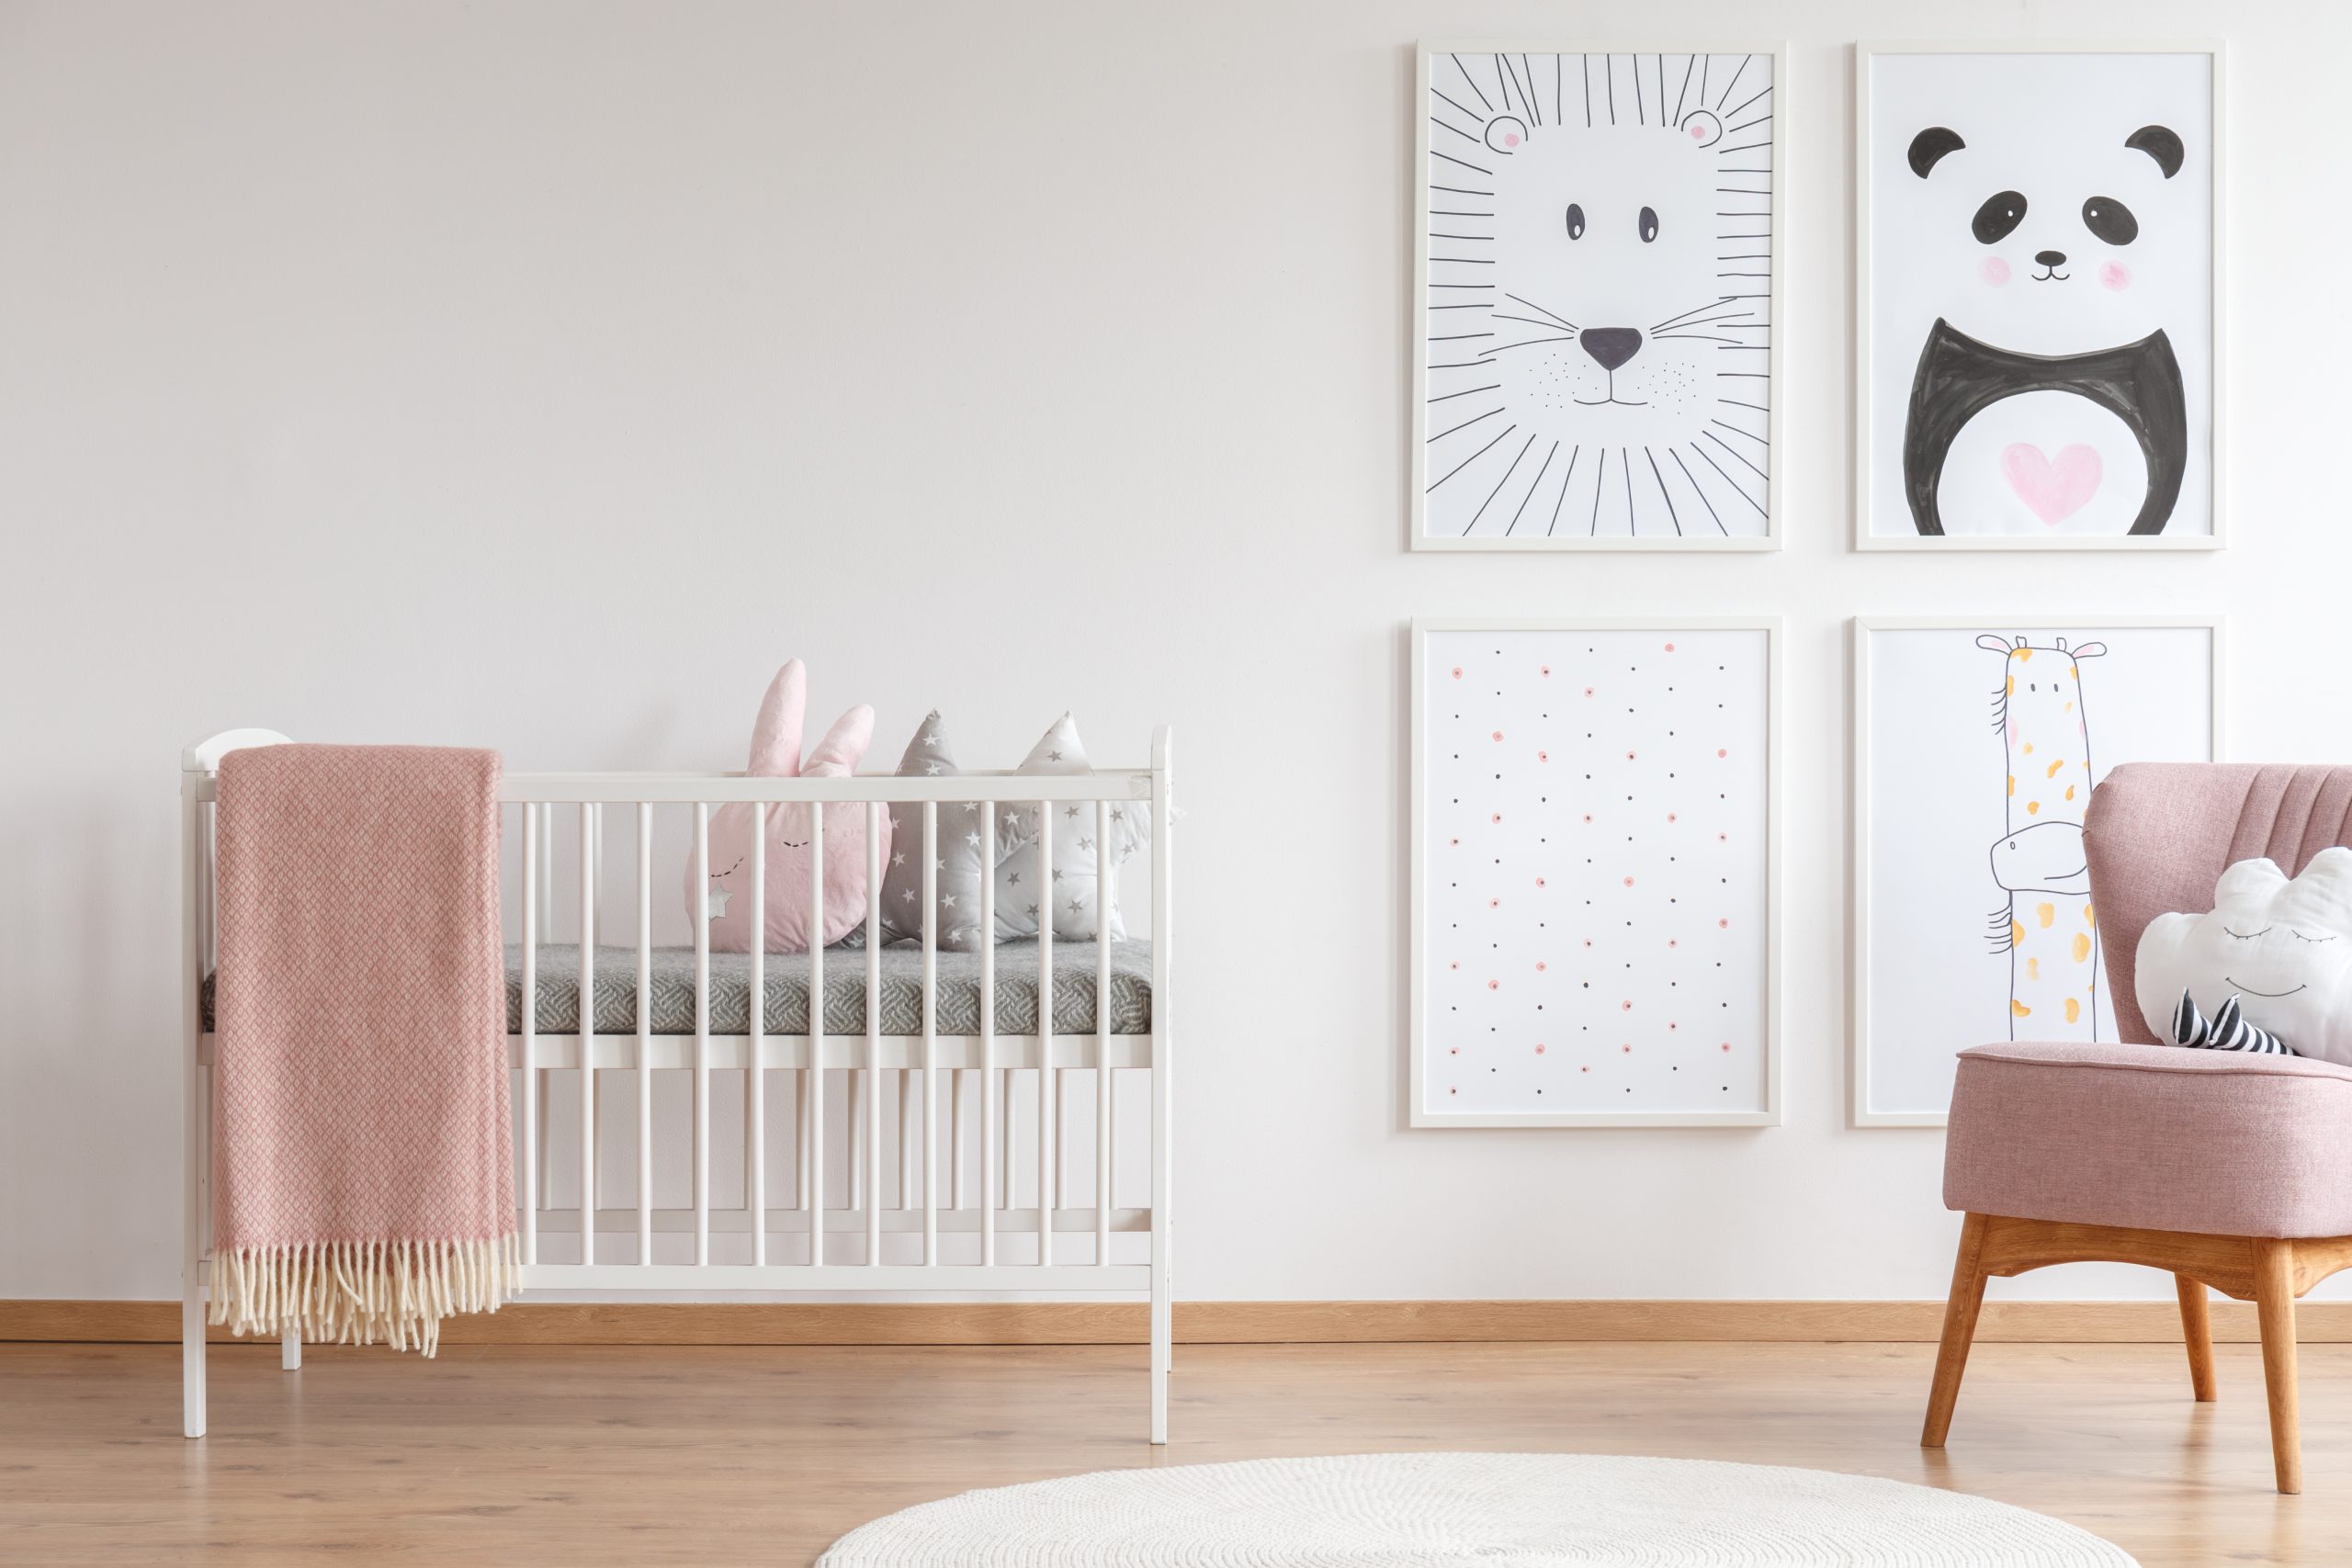 Crib In Baby Room 2021 08 26 15 43 18 Utc